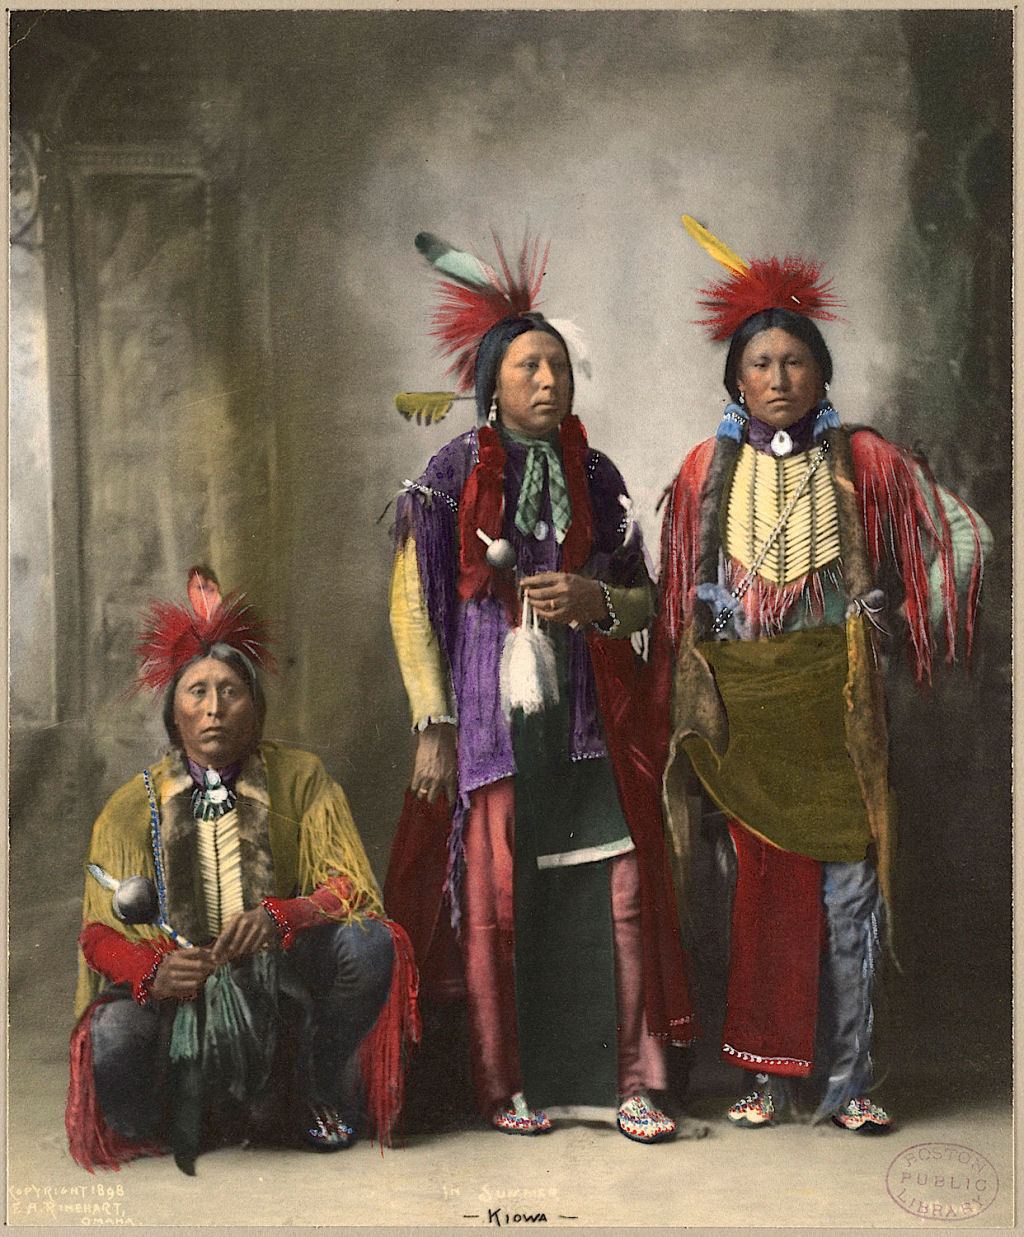 Impressionantes fotos históricas coloridas de nativos americanos do final do século 19 e início do século 20 33